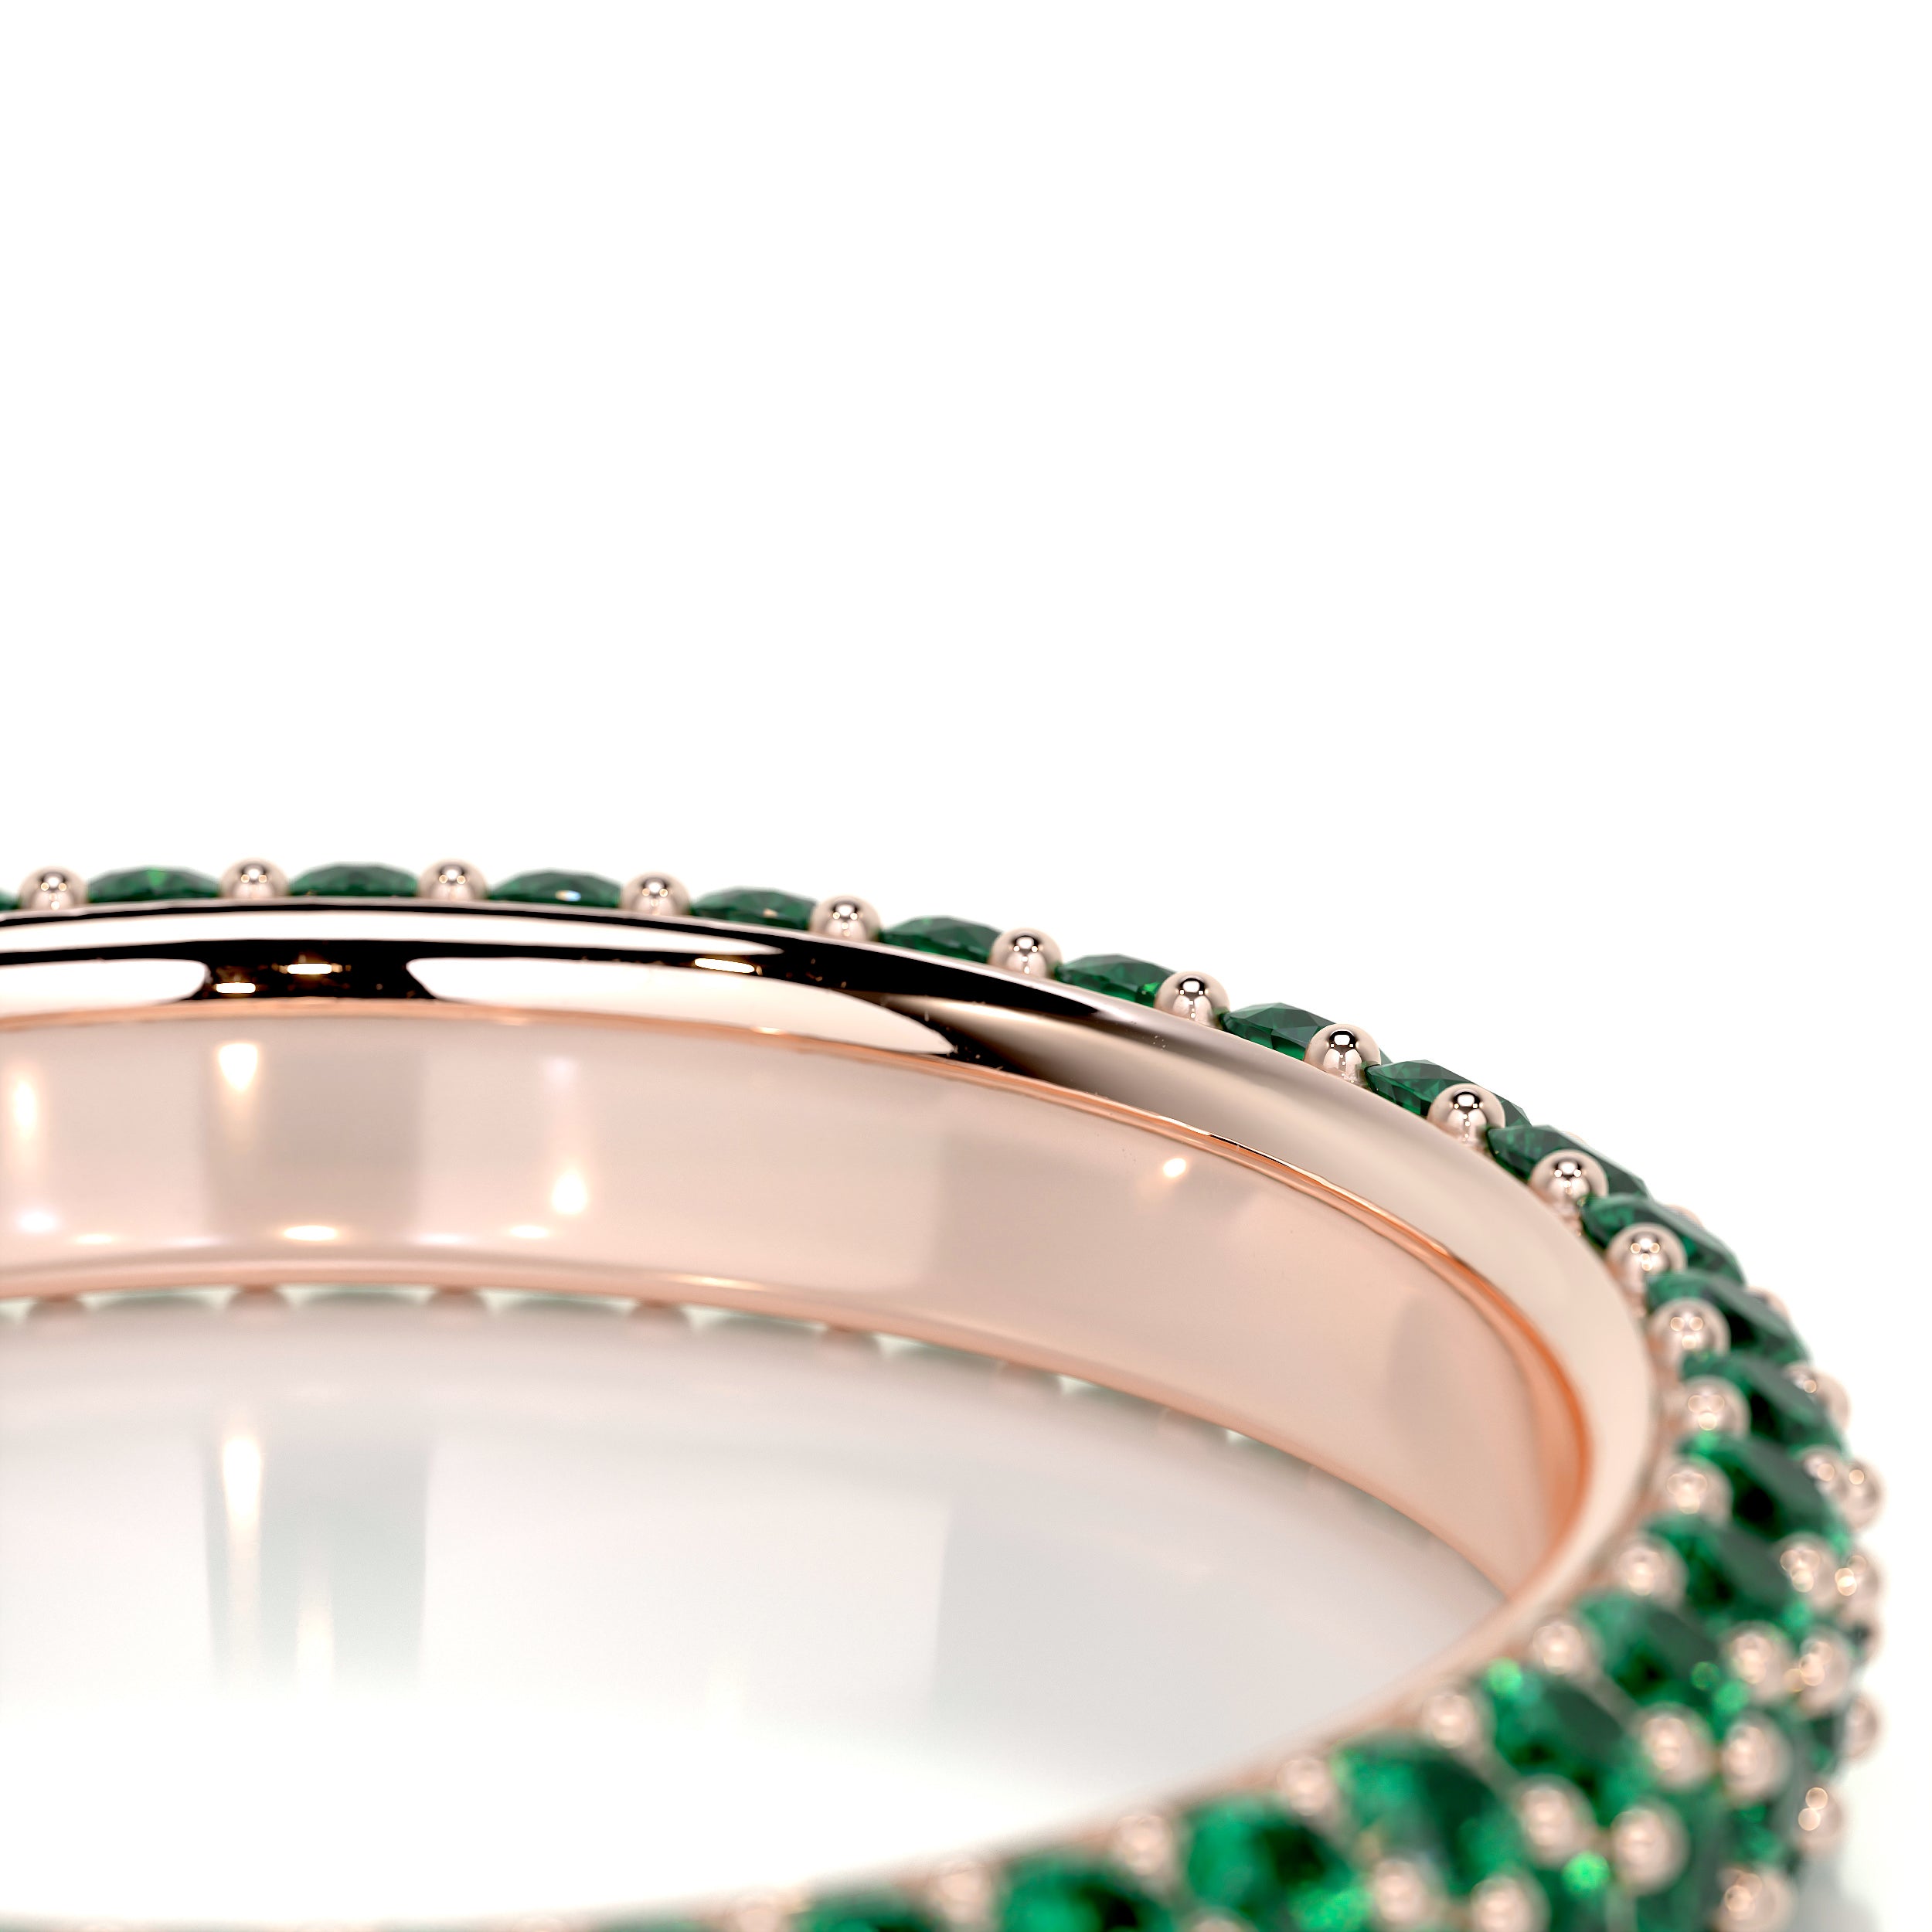 Emma Green Gemstone Wedding Ring   (1.25 Carat) - 14K Rose Gold